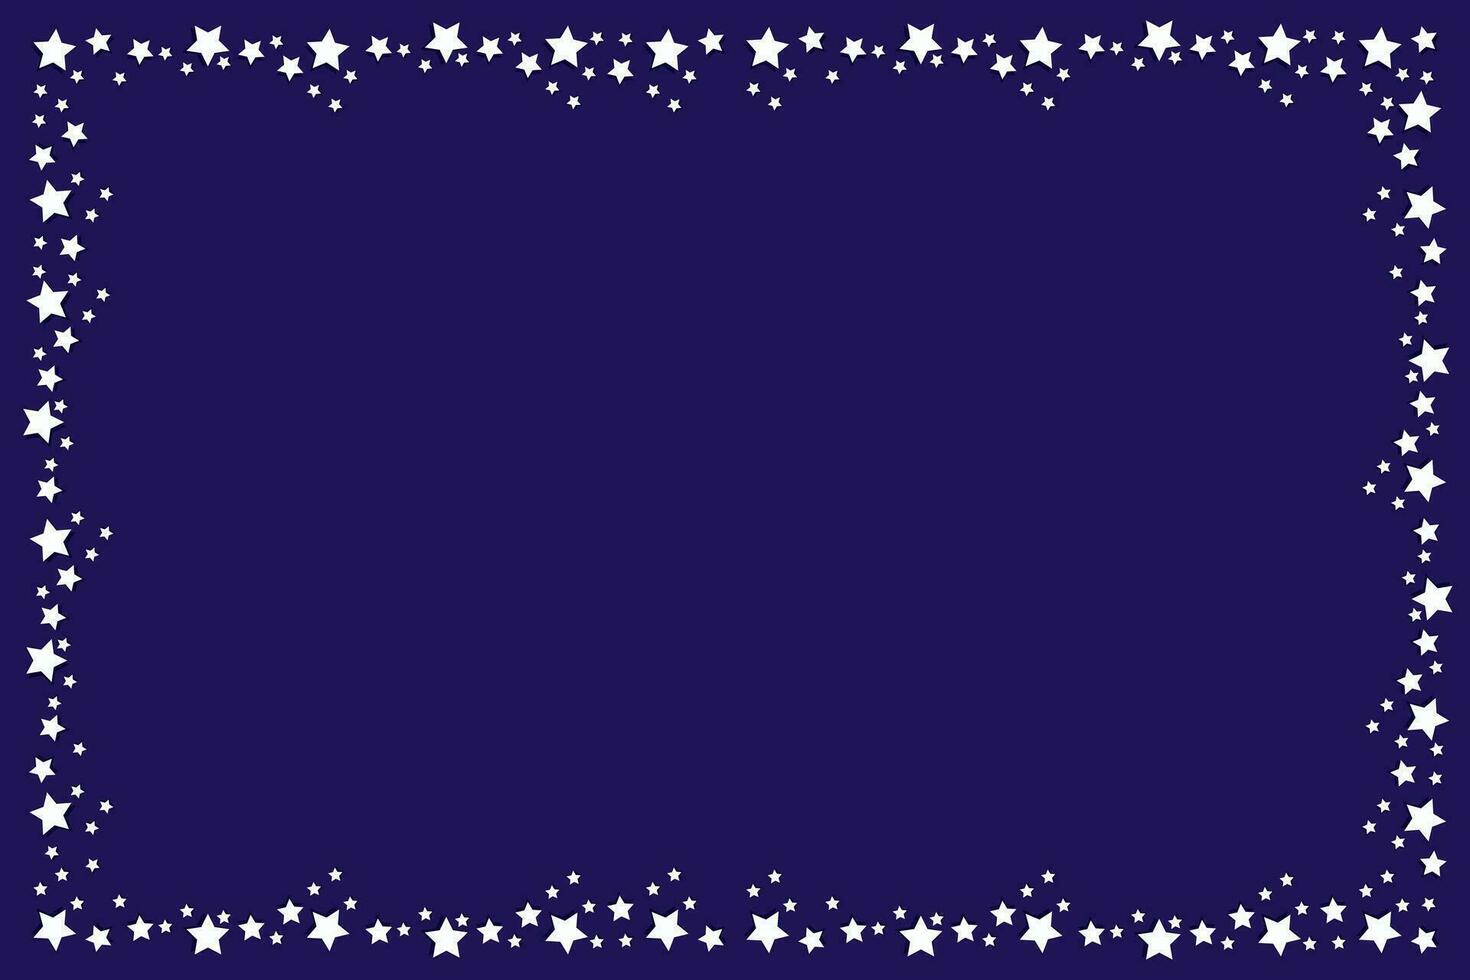 vektor festlig mörk blå bakgrund - vektor rektangulär jul mörk blå bakgrund - baner med en ram av vit små volumetriska stjärnor med Plats för text